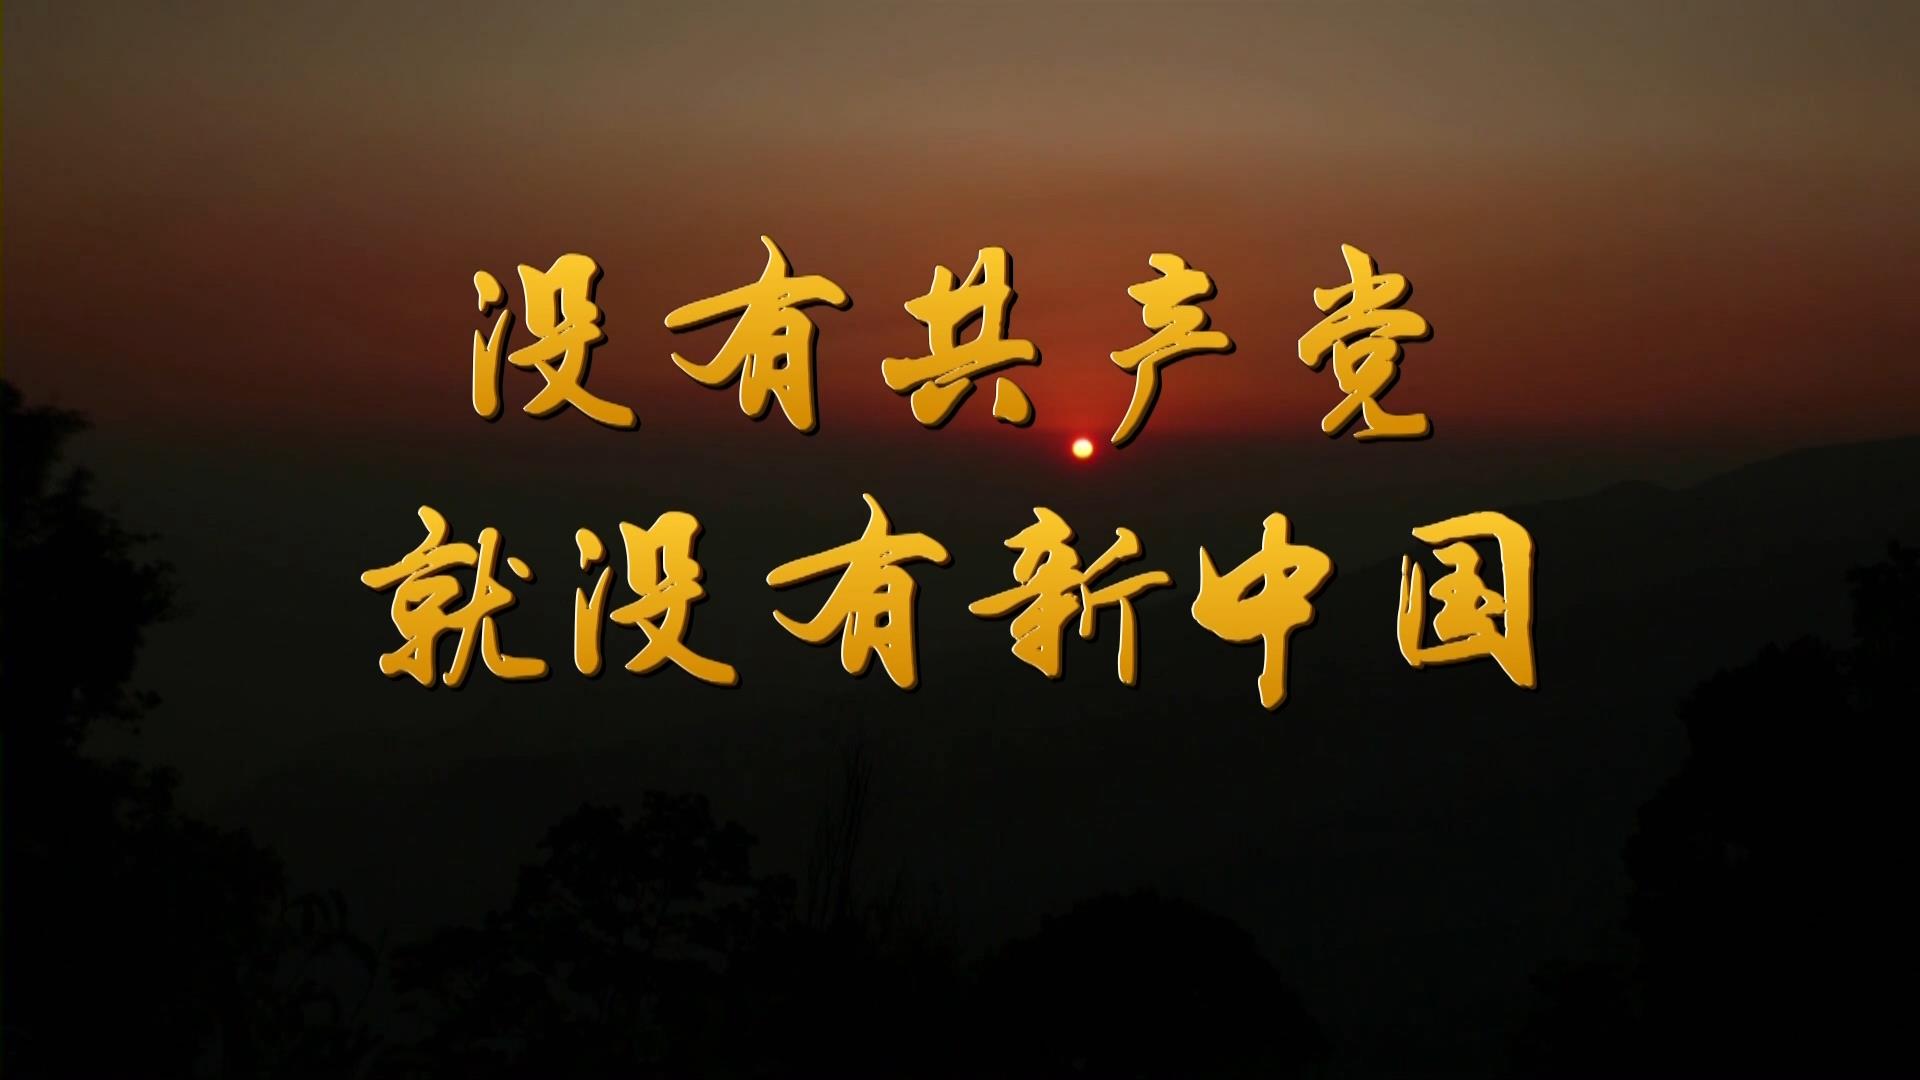 没有共产党就没有新中国-武警合唱团MV字幕配乐伴奏LED背景视频素材TV